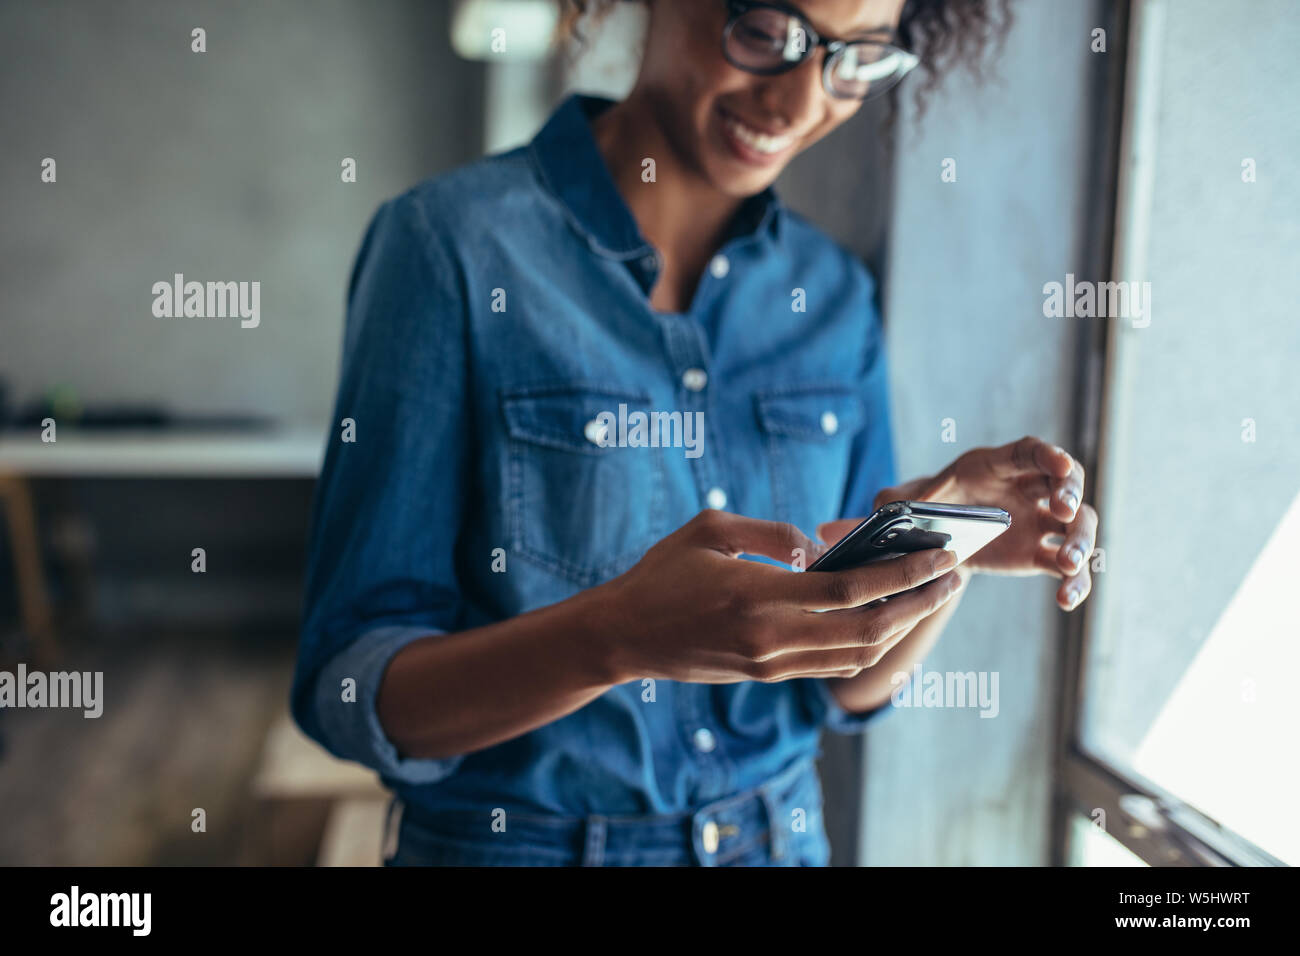 Imprenditore femmina in piedi in ufficio e utilizzando smart phone. Focus sul telefono cellulare in mano a una donna che indossa casuals. Foto Stock